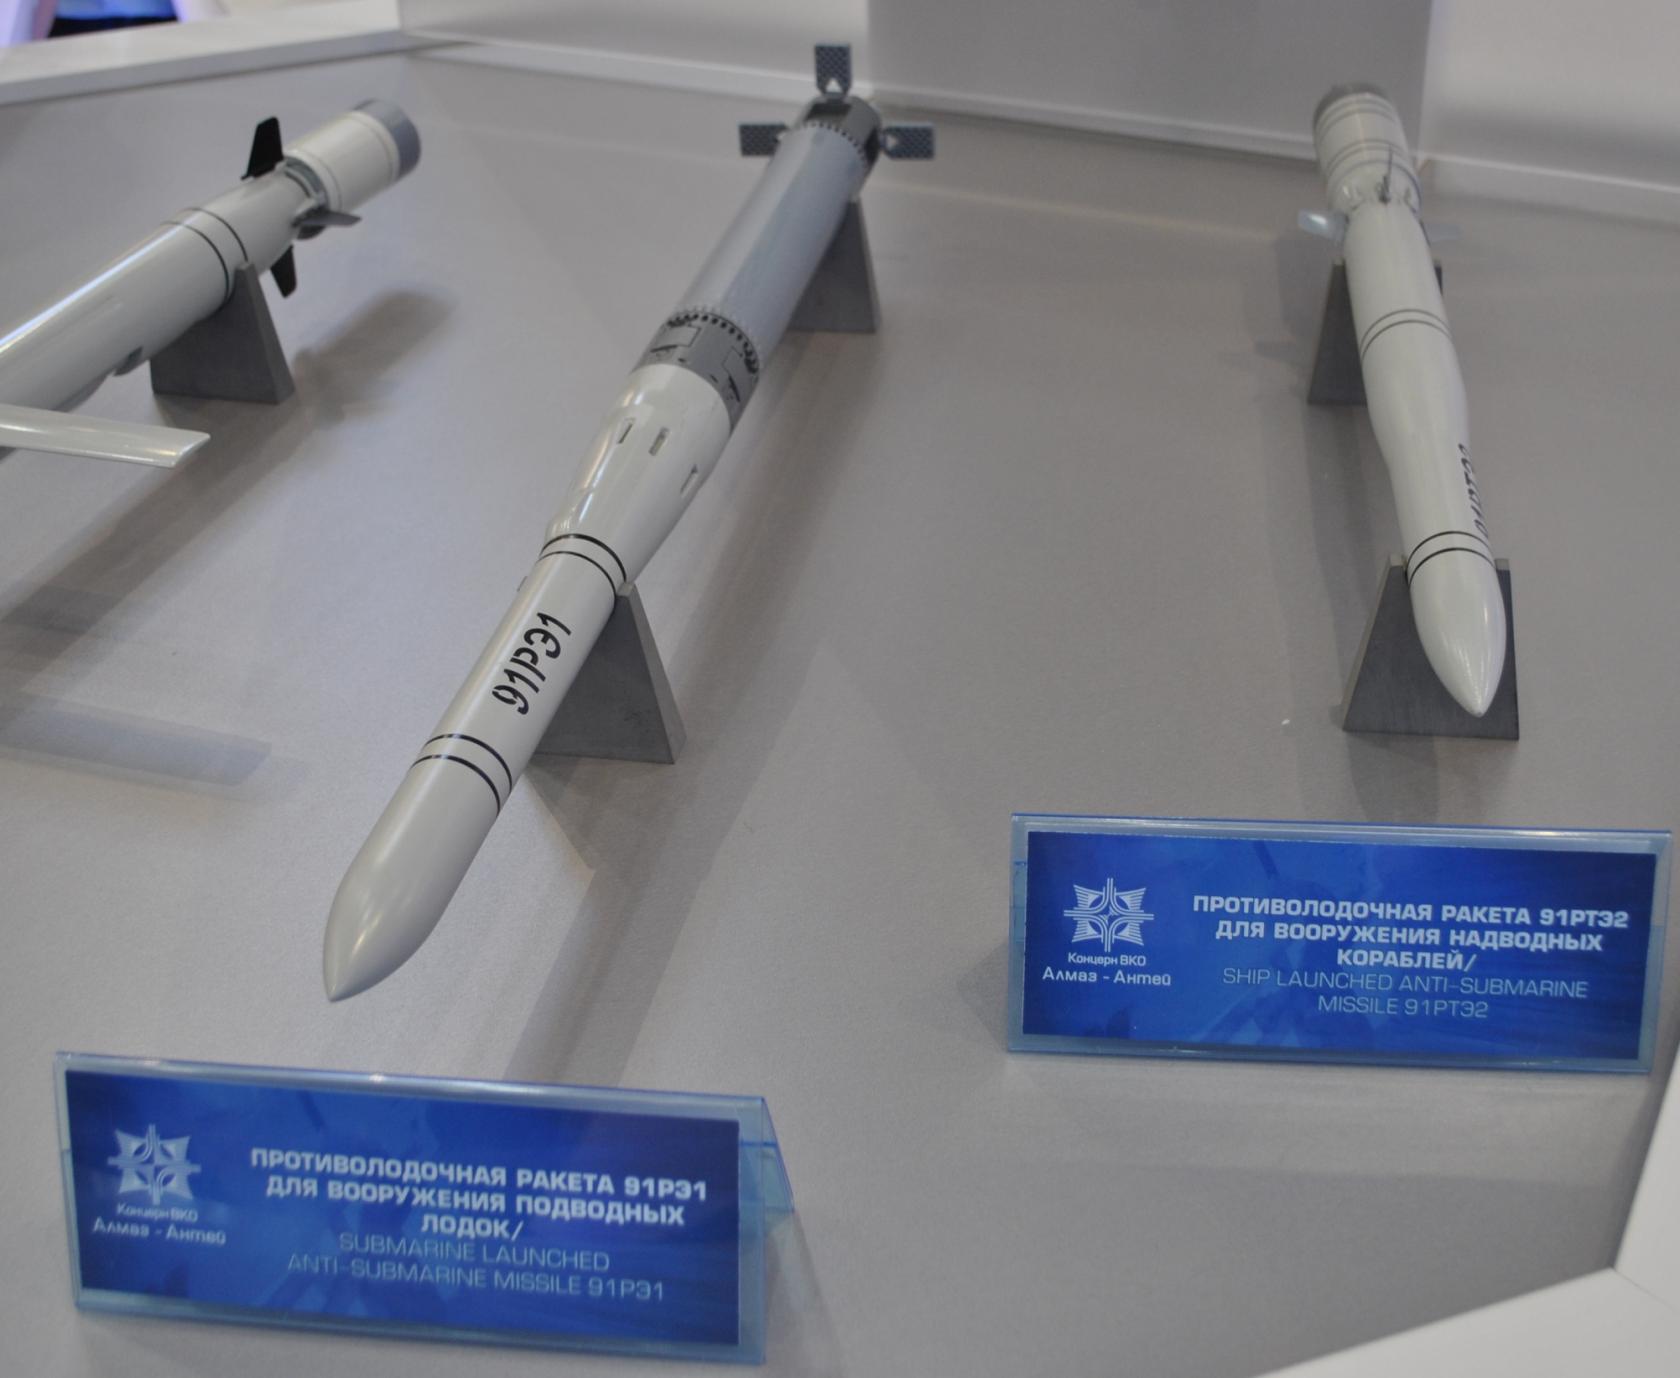 Упр-4 «метель» - противолодочный ракетный комплекс